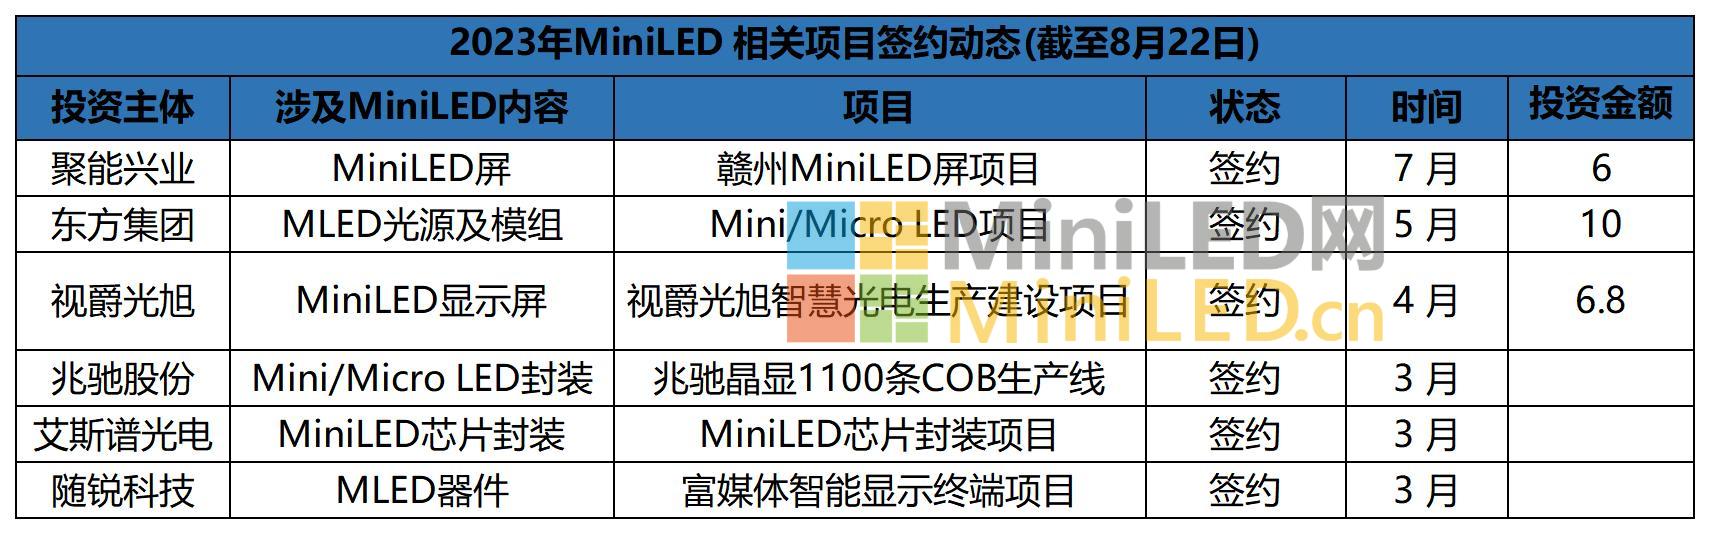 2023年MiniLED 相关项目签约动态(截至8月22日)_Sheet1.jpg